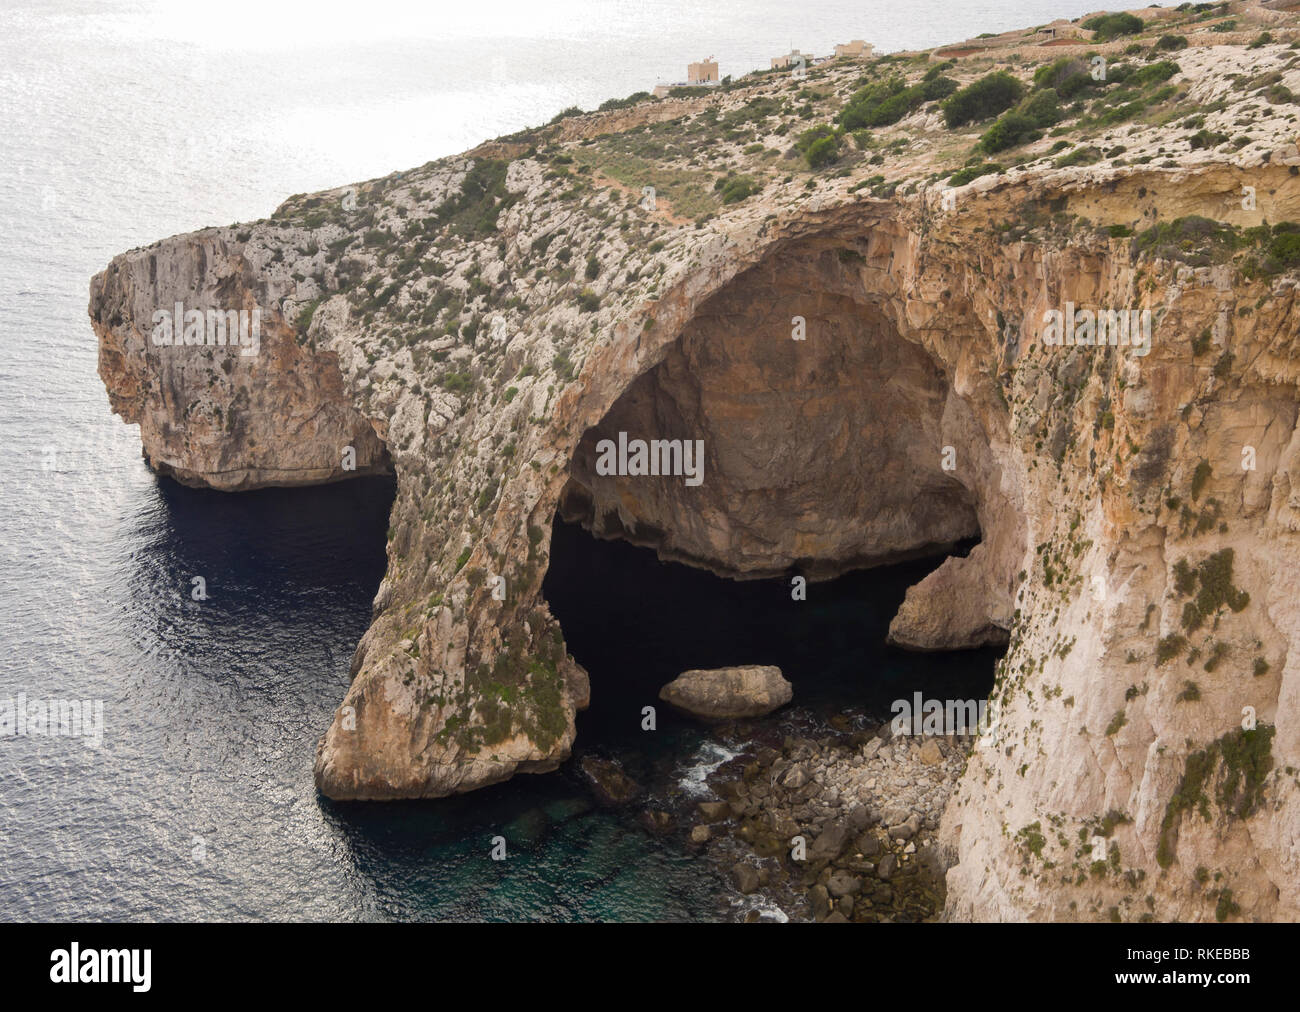 La escarpada costa de Malta, aquí visto desde el punto de vista de la gruta azul Foto de stock